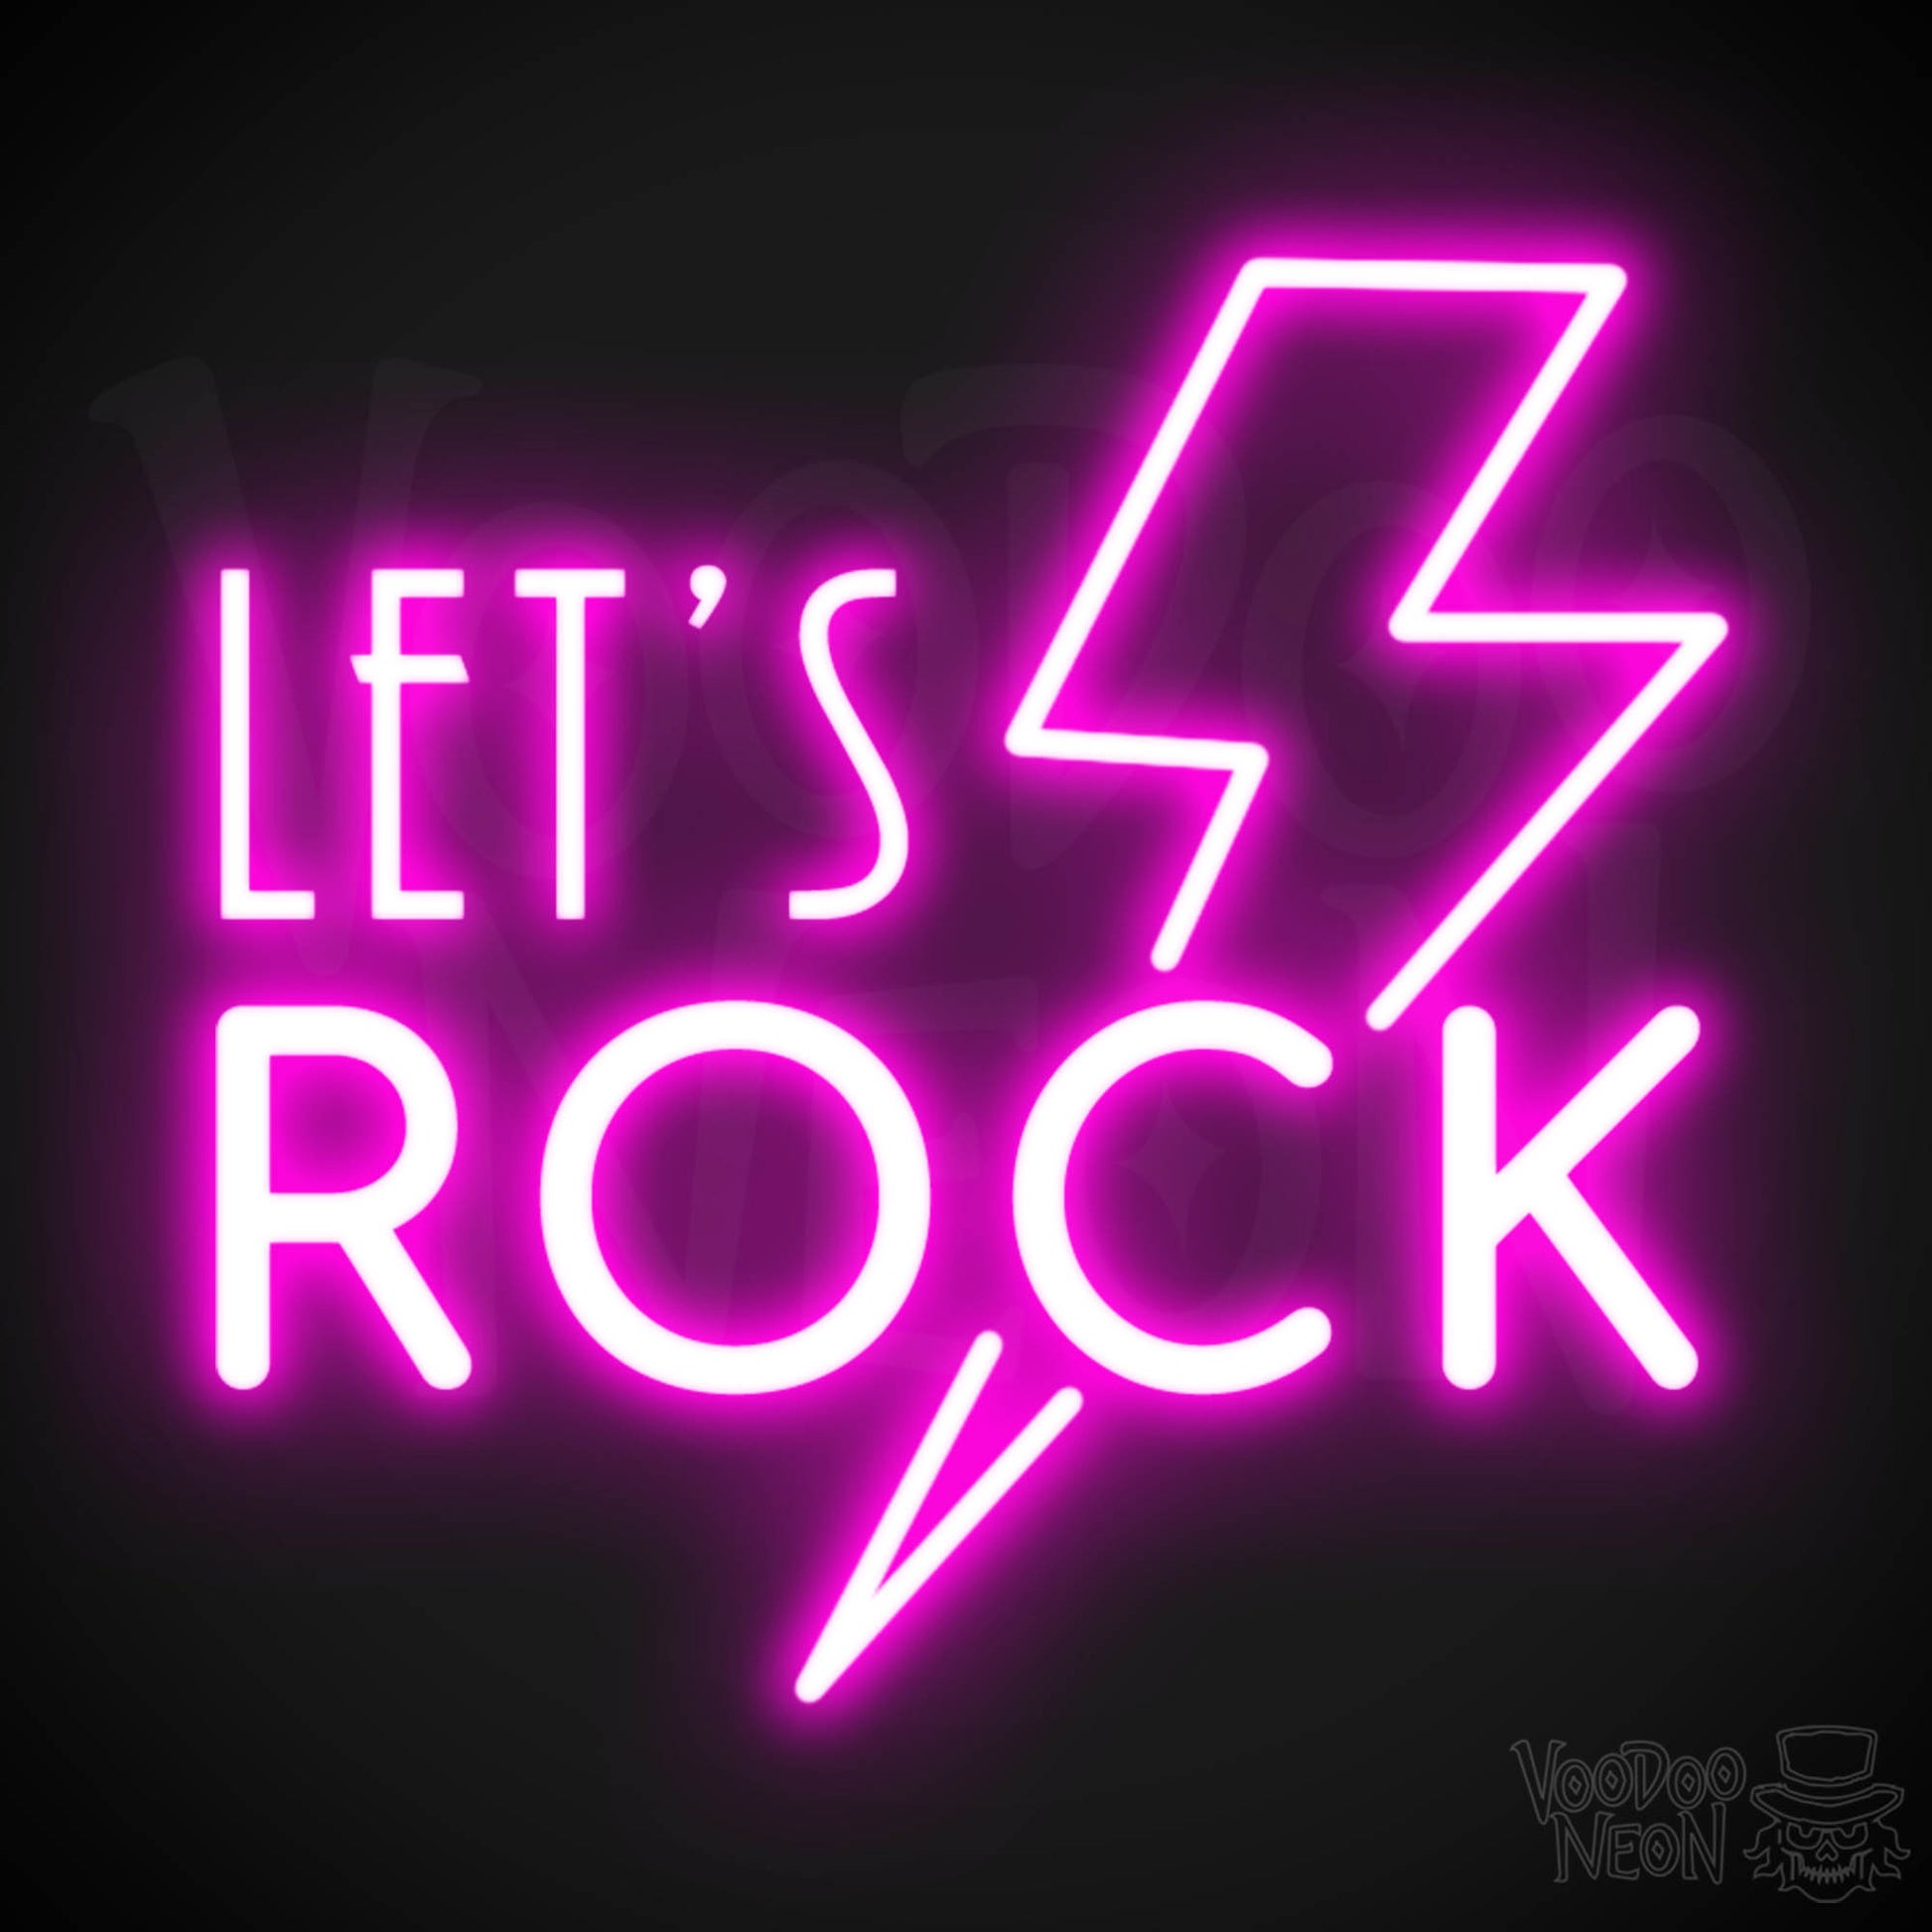 Let's Rock Neon Sign - Let's Rock LED Light Up Sign - Color Pink